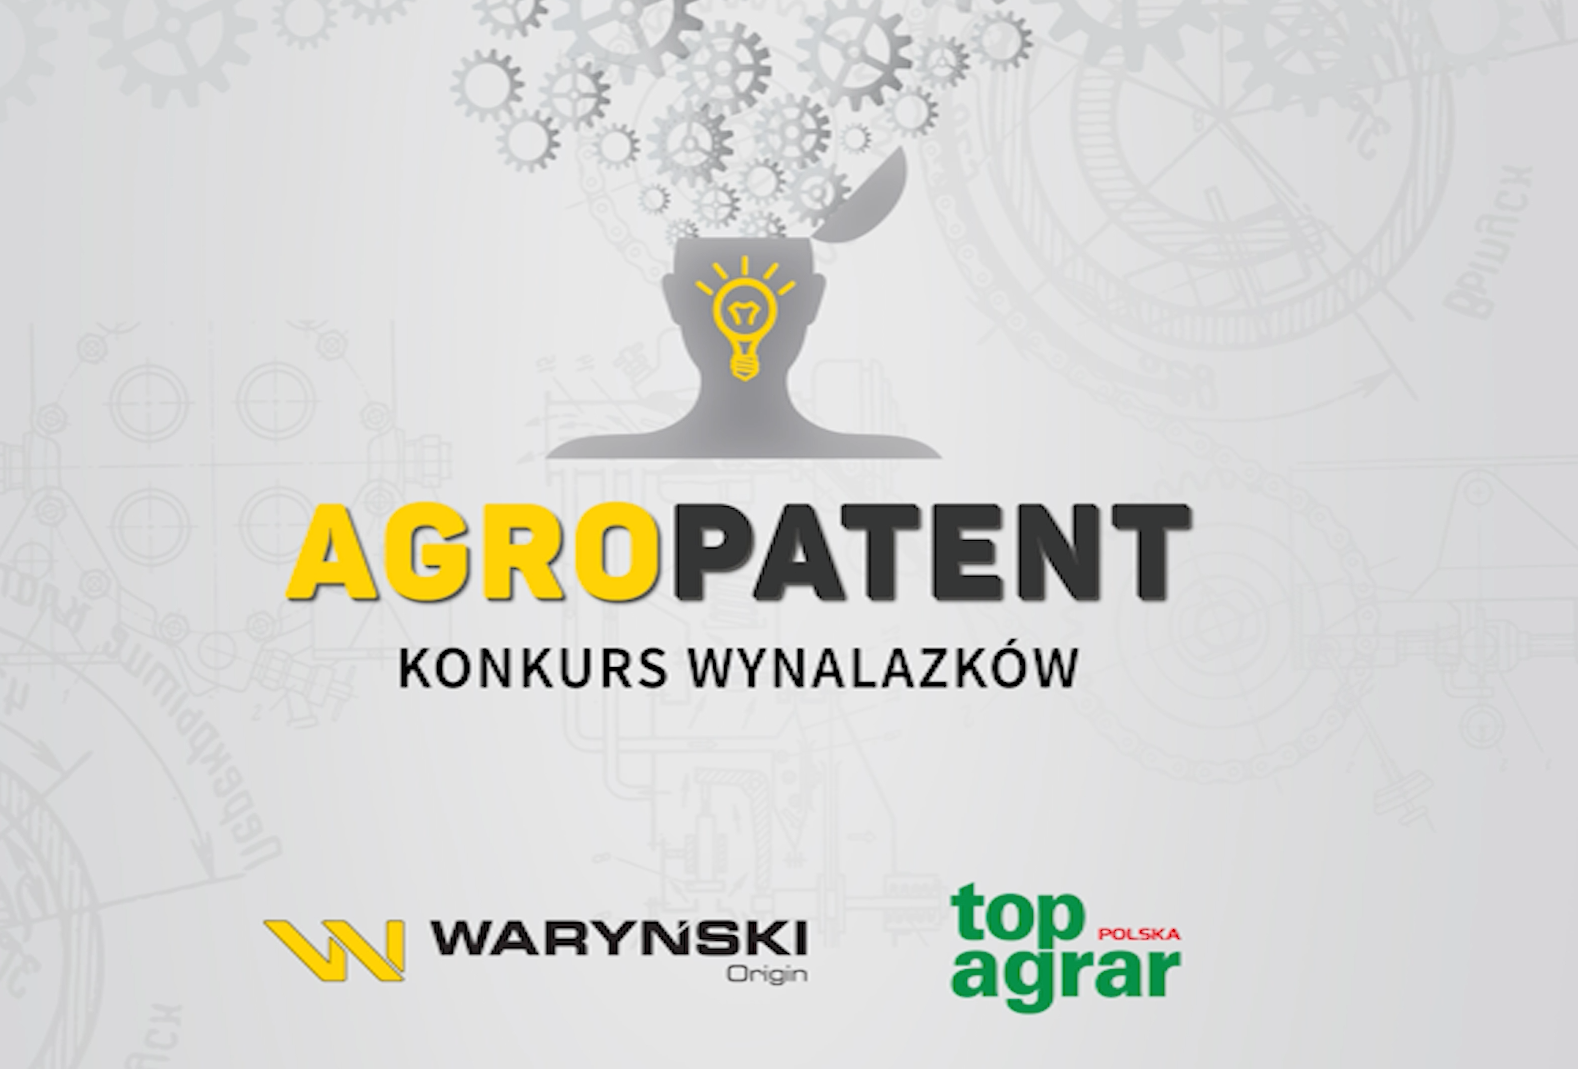 Już można zgłaszać pomysły do Konkursu wynalazków – Agropatent. Nagrodą specjalną jest produkcja Twojego wynalazku! Chcesz wygrać – zgłoś nam swój pomysł!